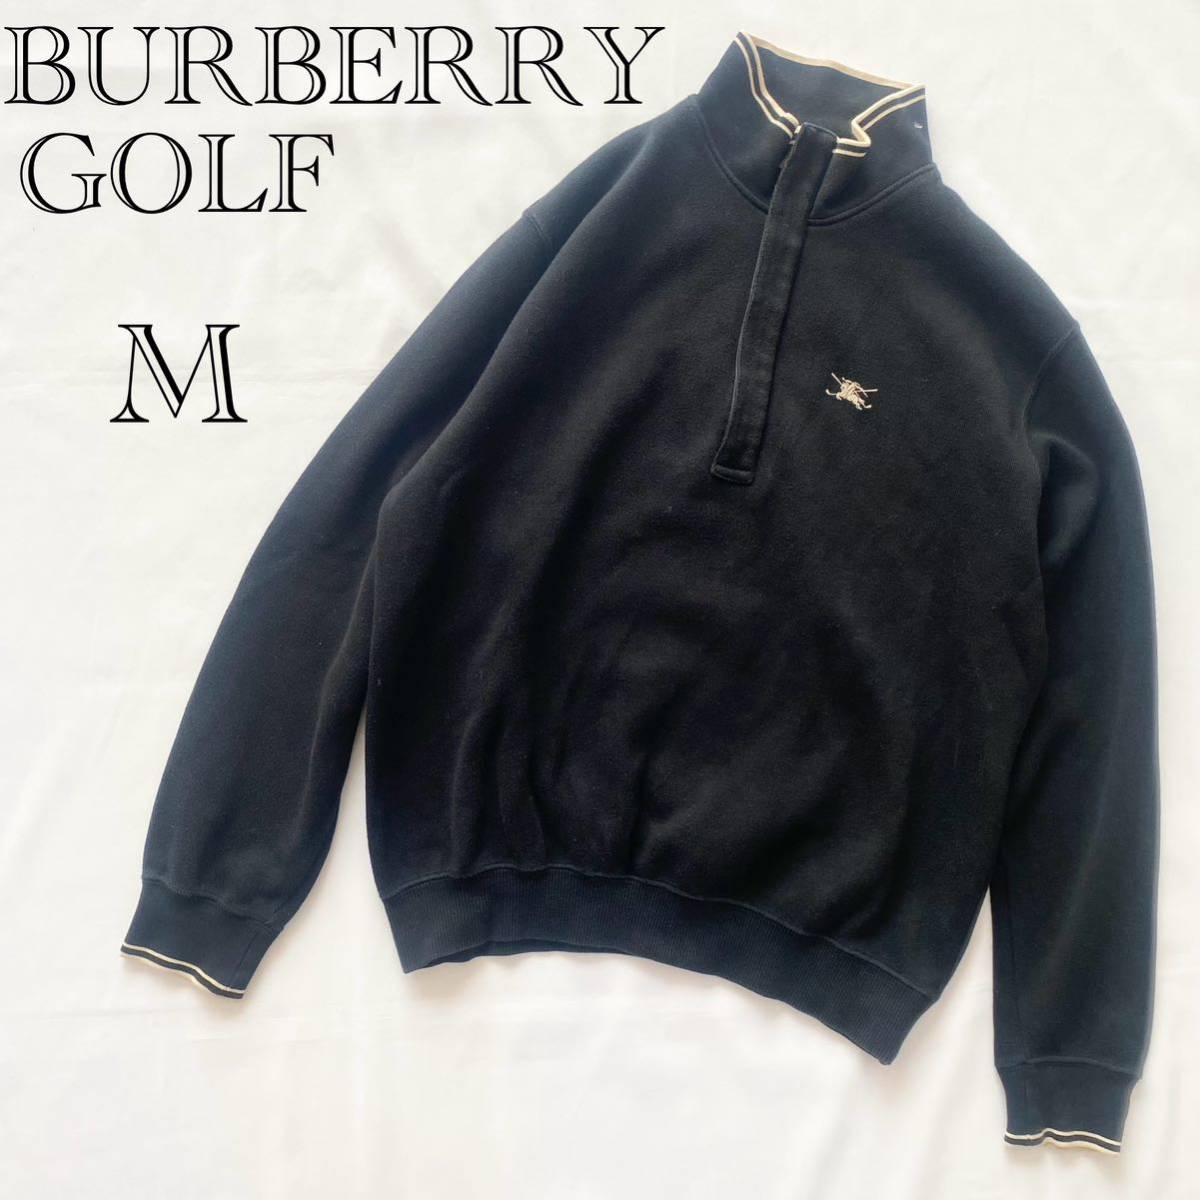 BURBERRY GOLF バーバリーゴルフ メンズ ハーフジップ 長袖 ゴルフウェア Mサイズ